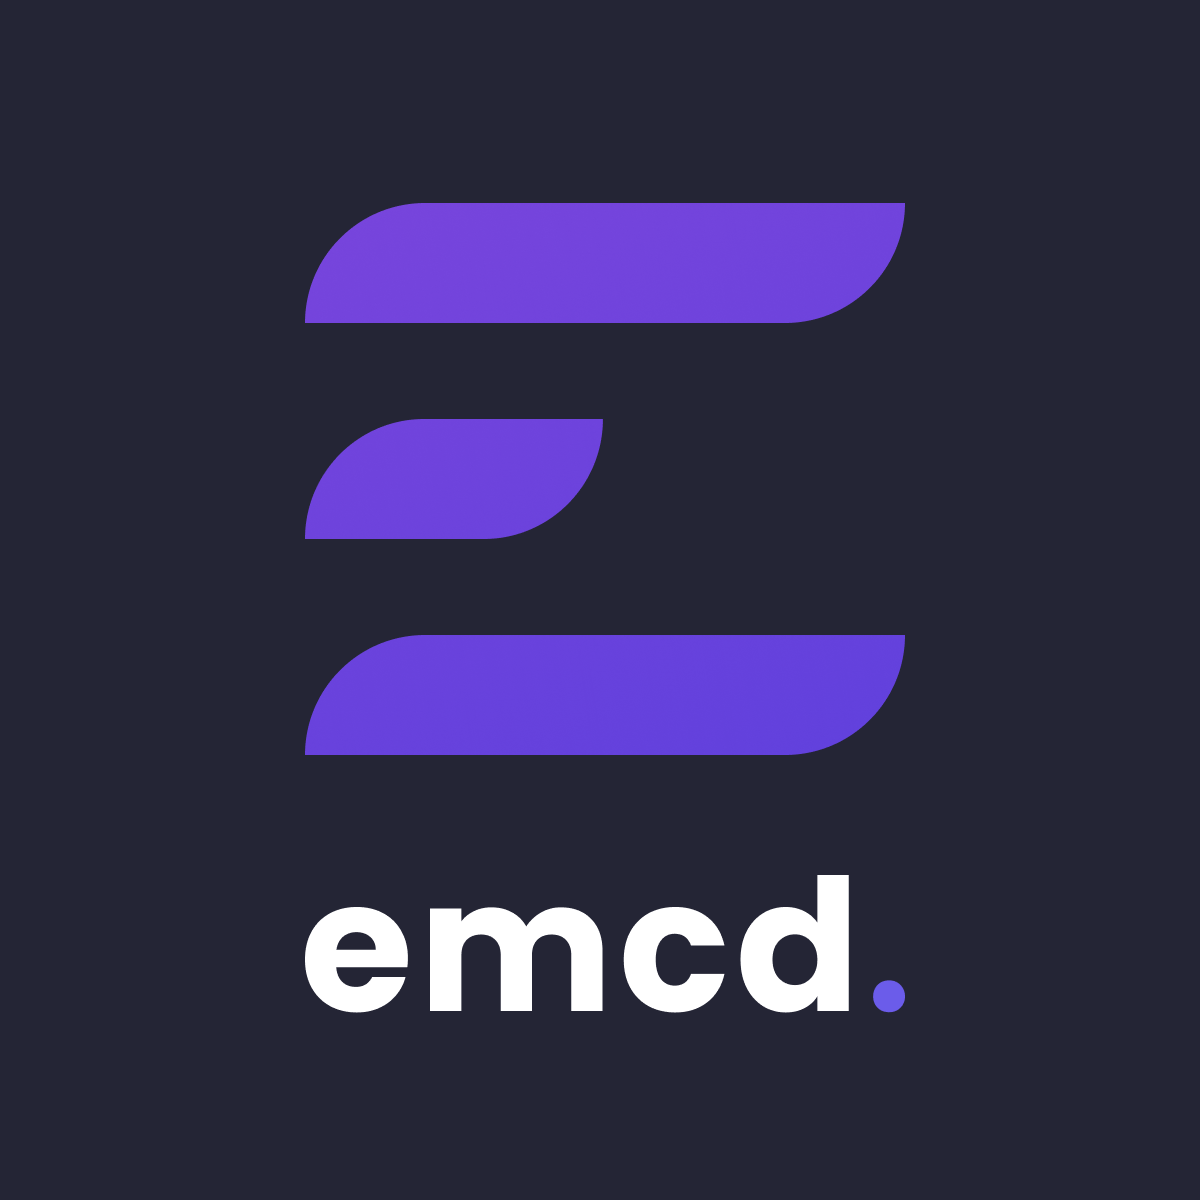 Emcd pool. EMCD Tech. EMCD logo. EMCD пул для майнинга.